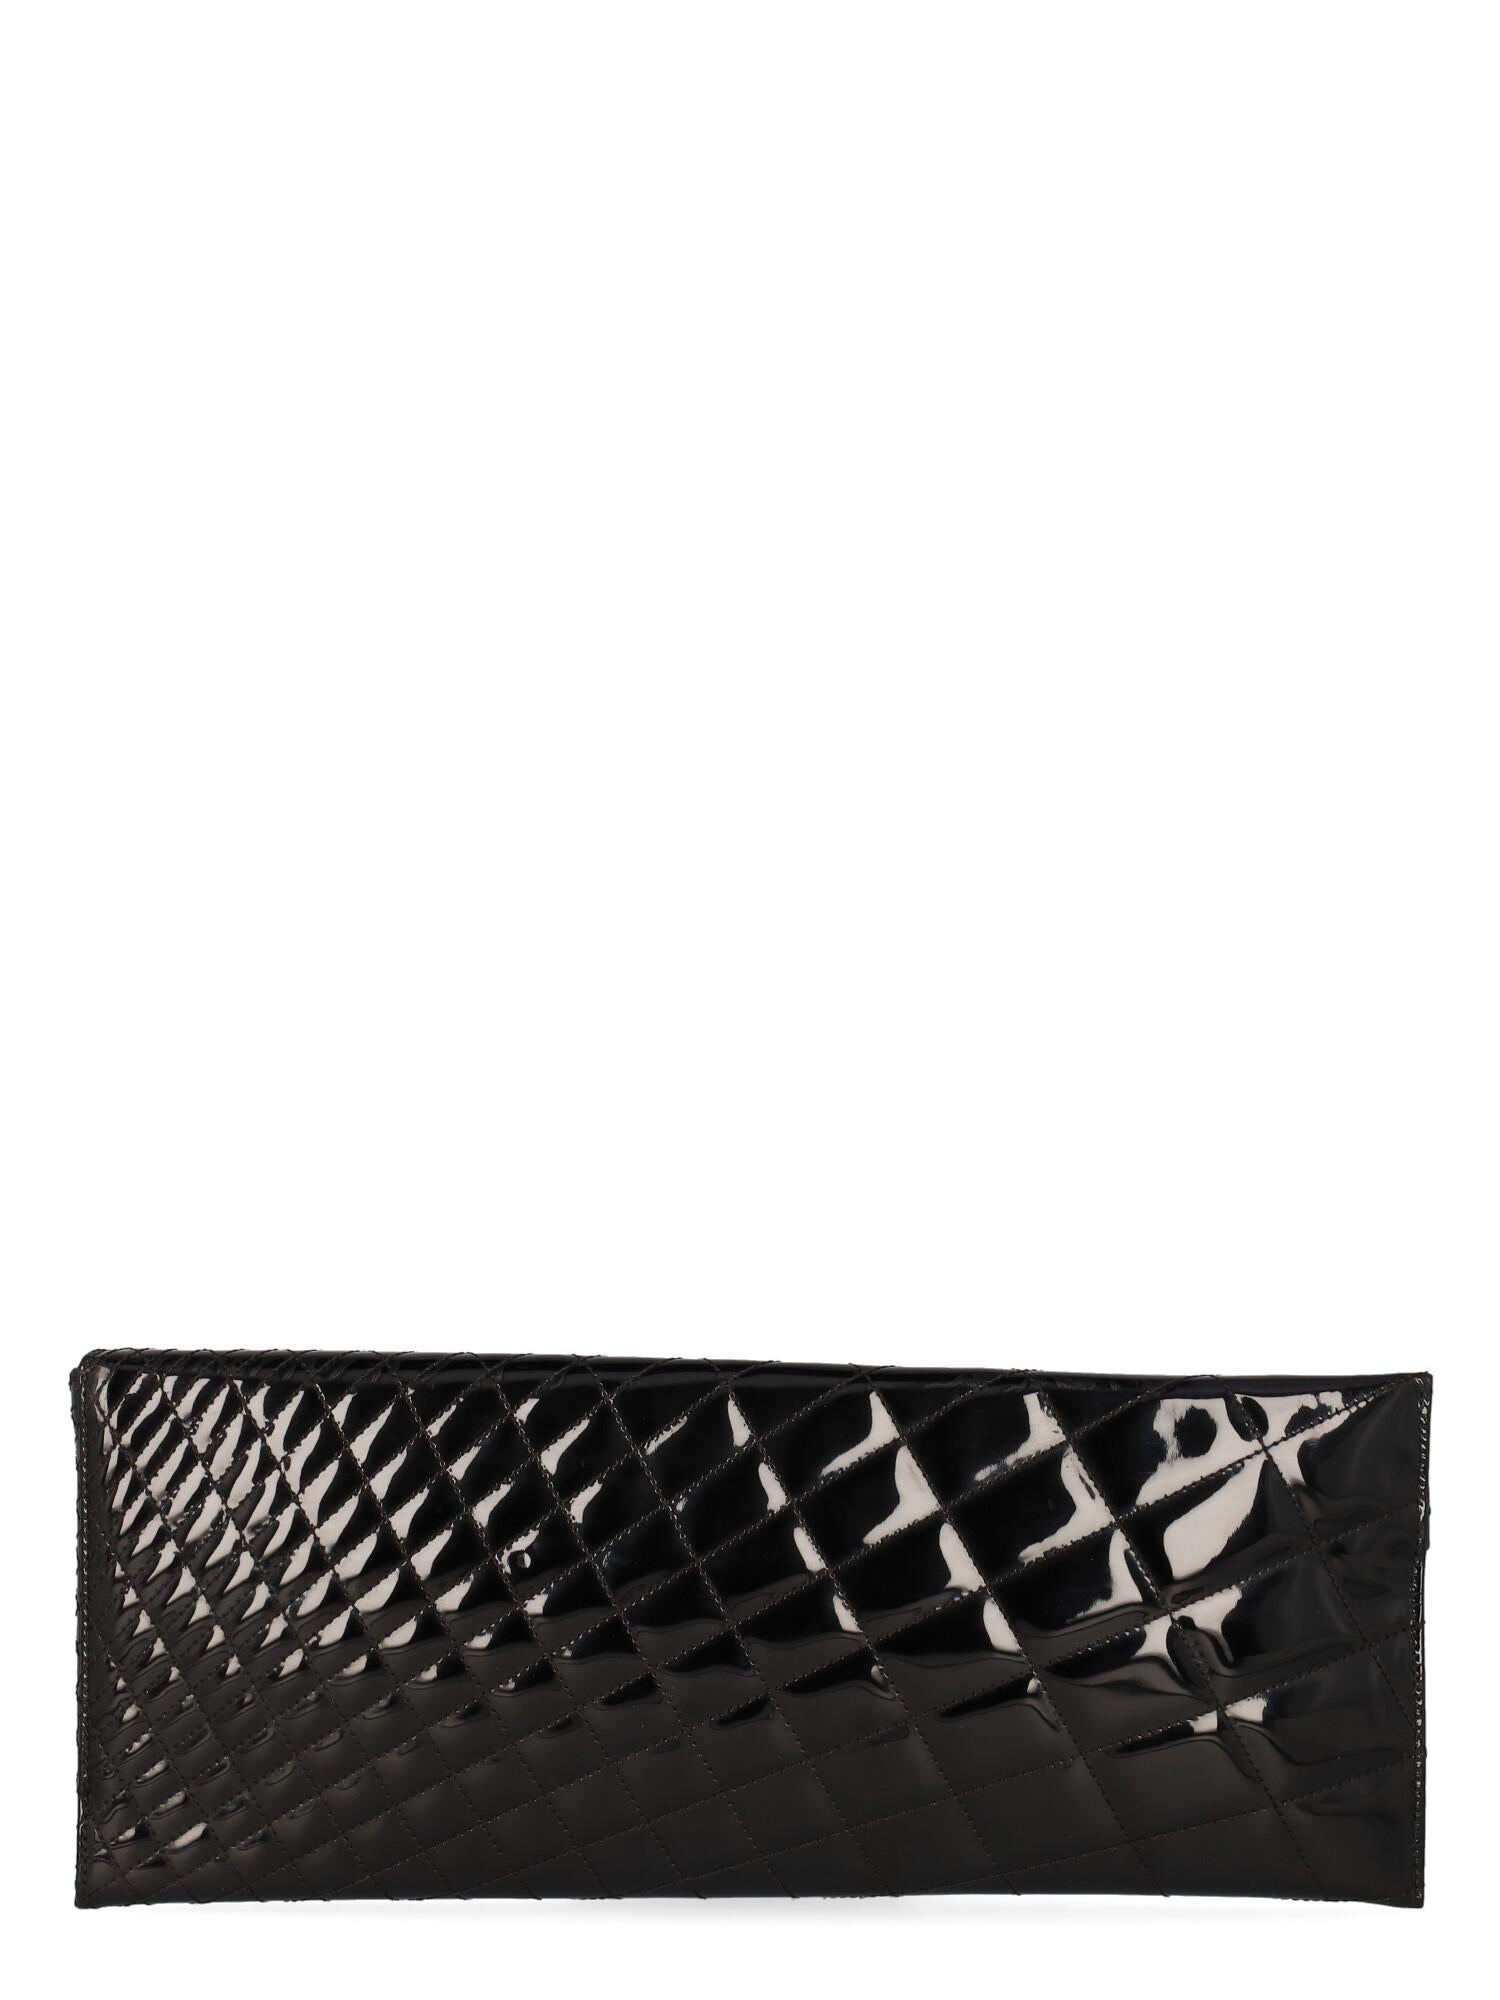 Women's Chanel Women Handbags Black Leather  For Sale